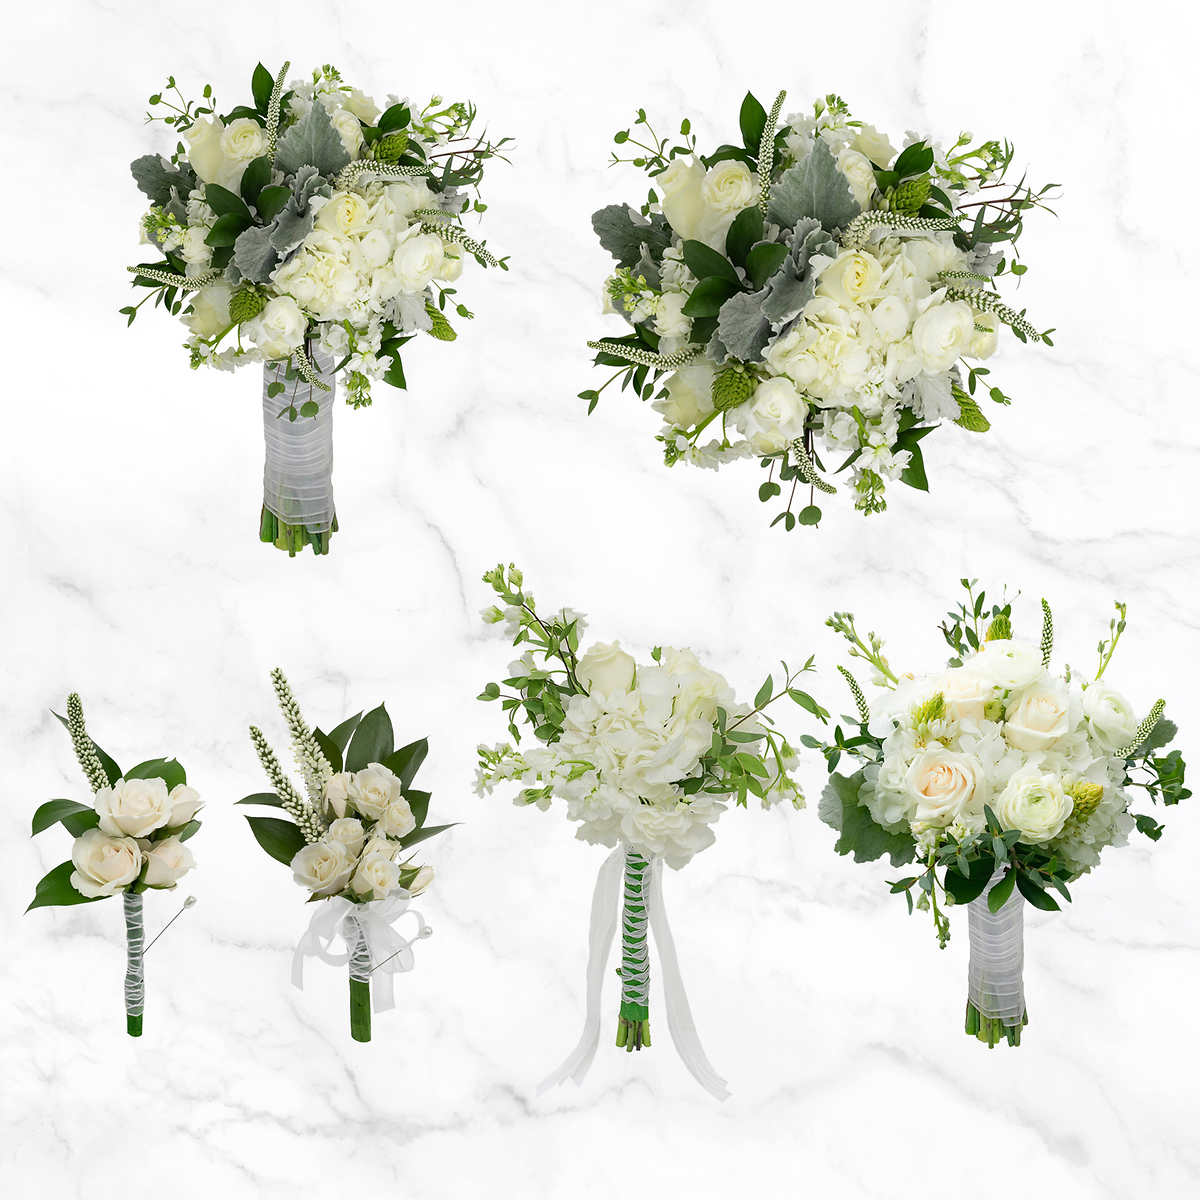 Artificial Flower Bouquet Stimulation Plant Desktop Wedding Party Home Decor WE 